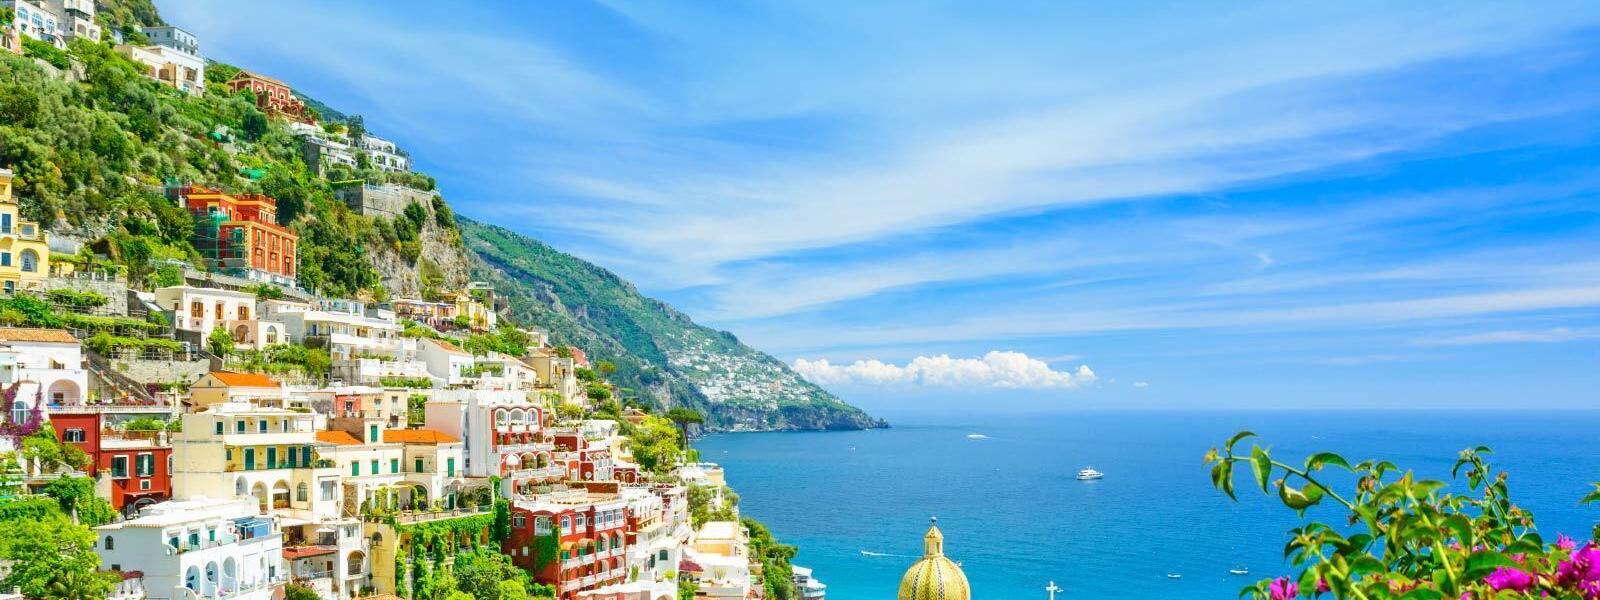 Ferienwohnungen und Ferienhäuser an den Oberitalienischen Seen - atraveo